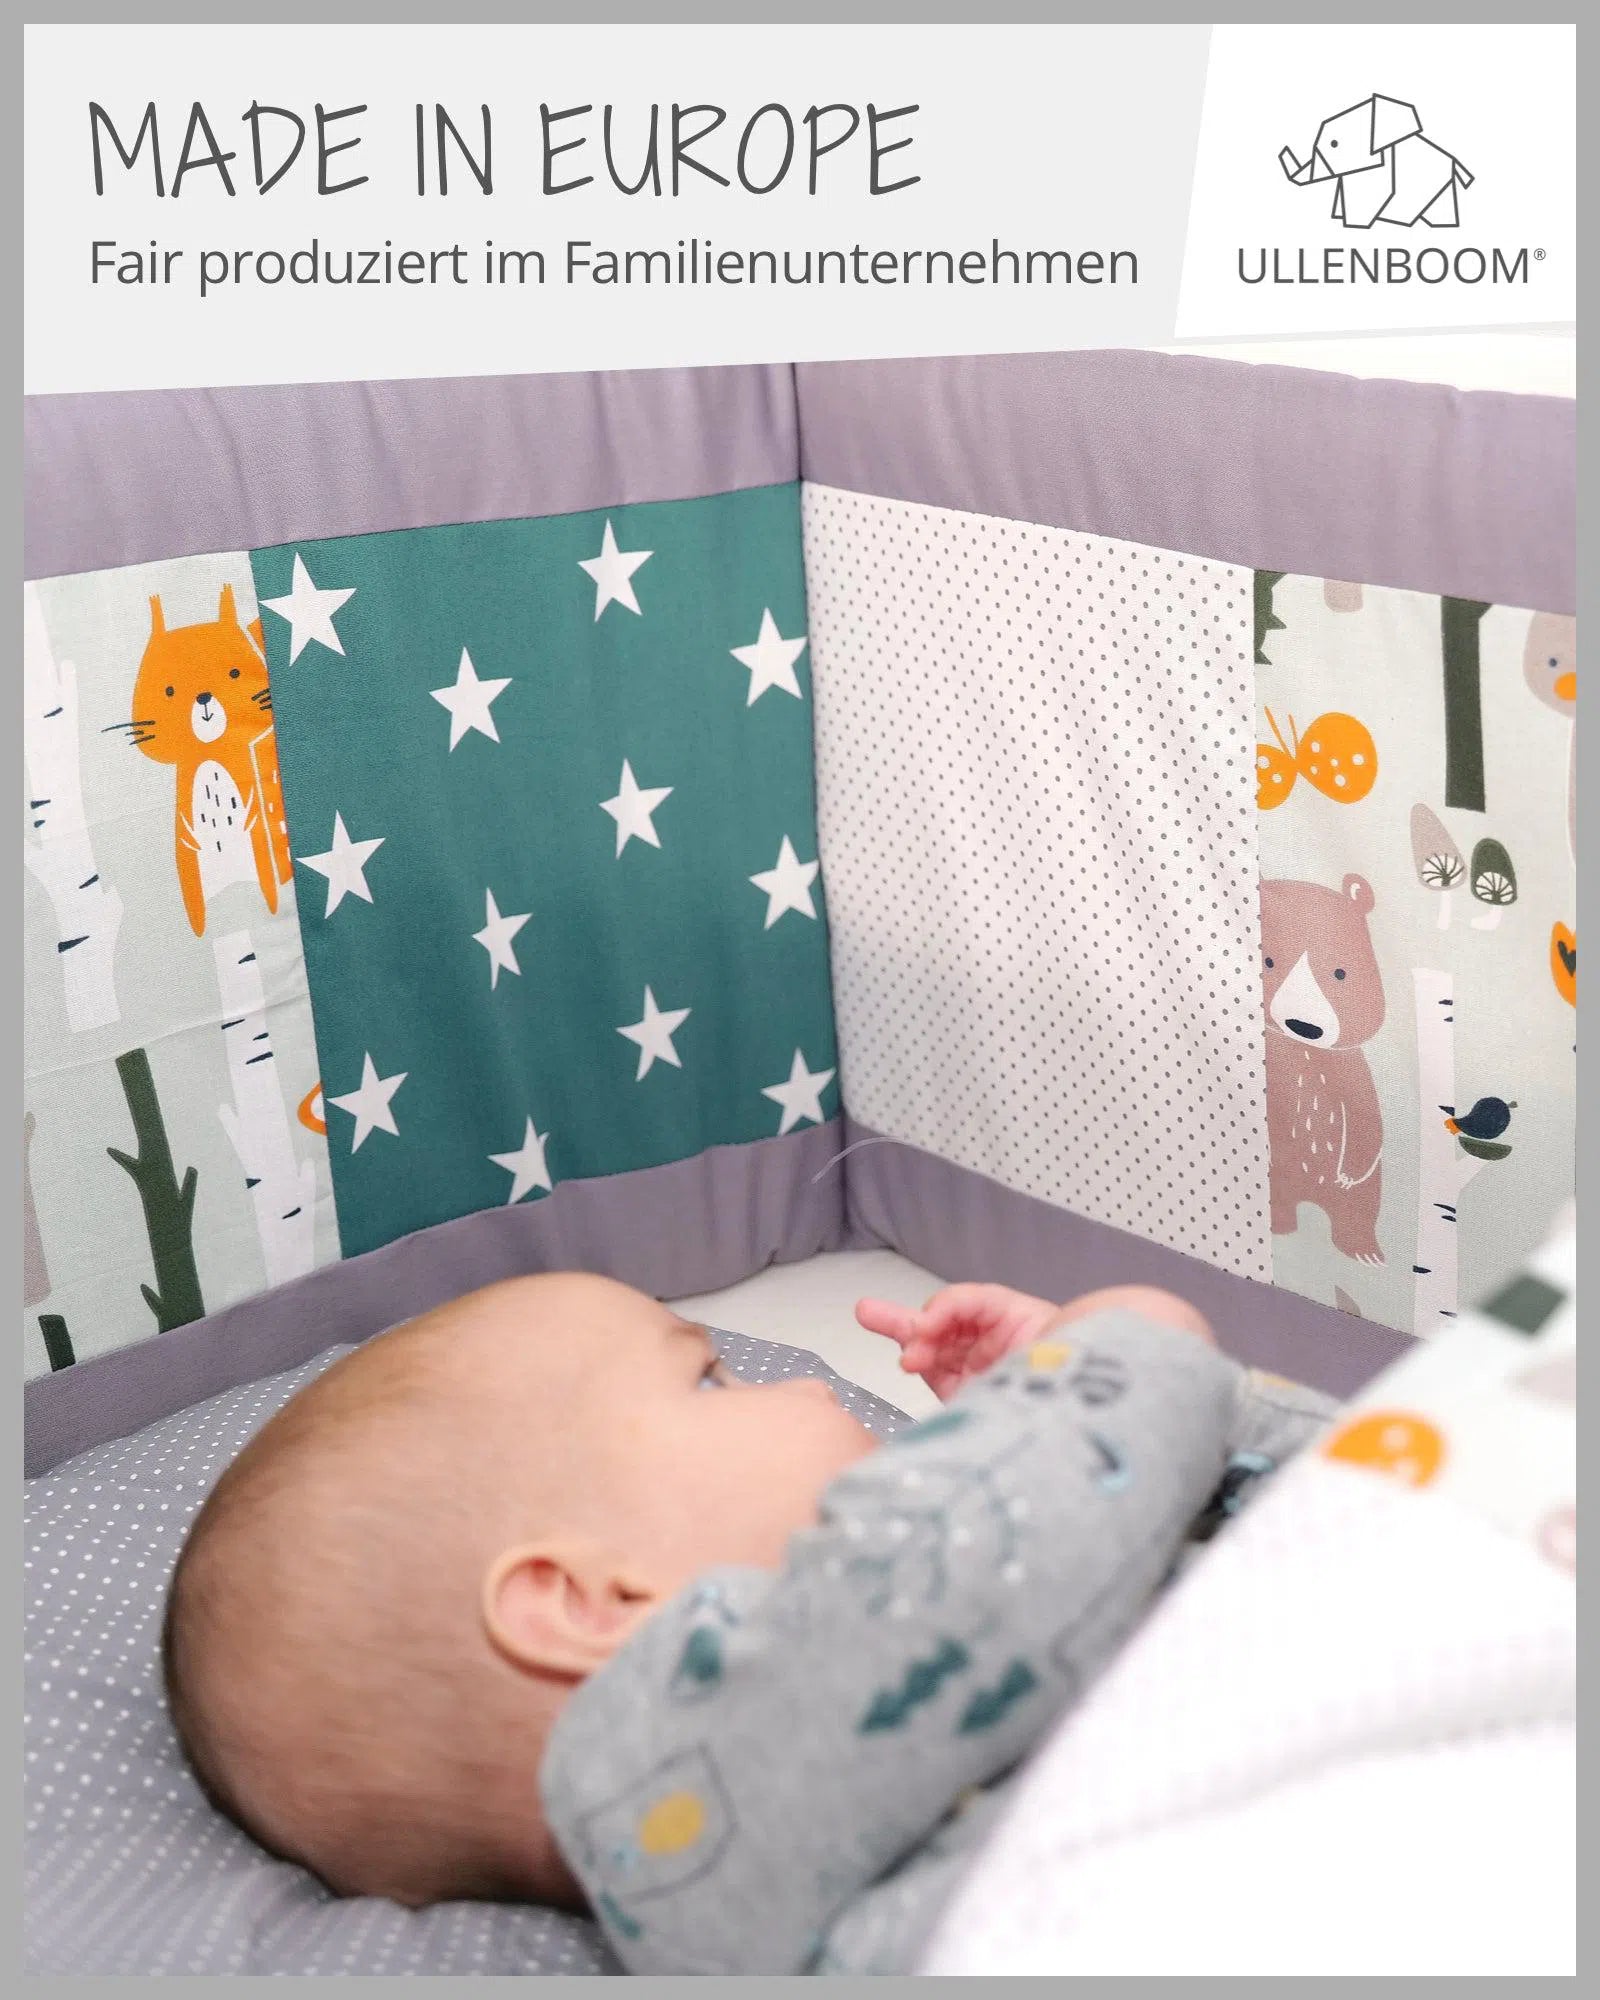 Nestchen für Babybett Patchwork BLAU HELLBLAU GRAU-ULLENBOOM-ULLENBOOM Baby